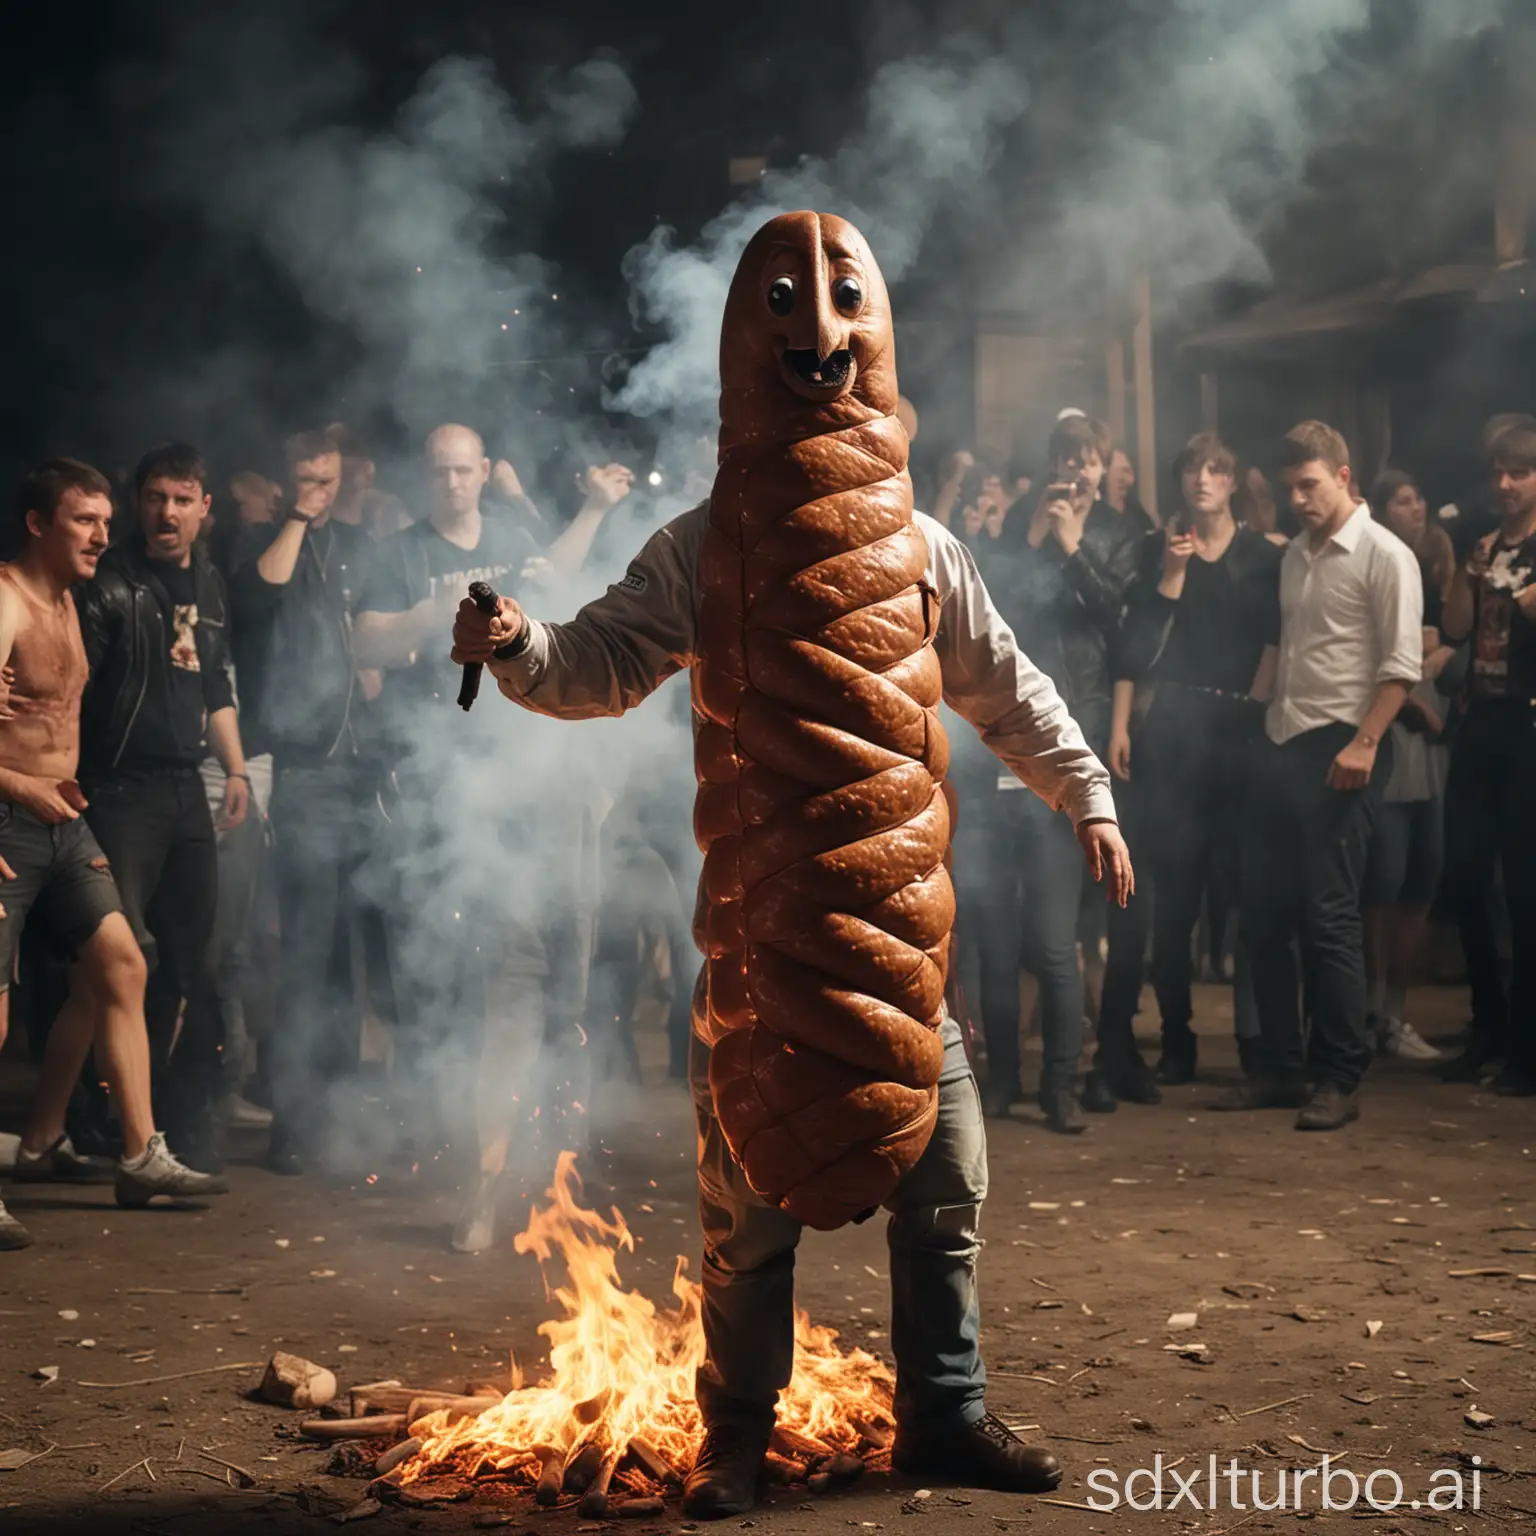 Anthropomorphic-Sausage-Man-Dancing-at-Russian-Village-Disco